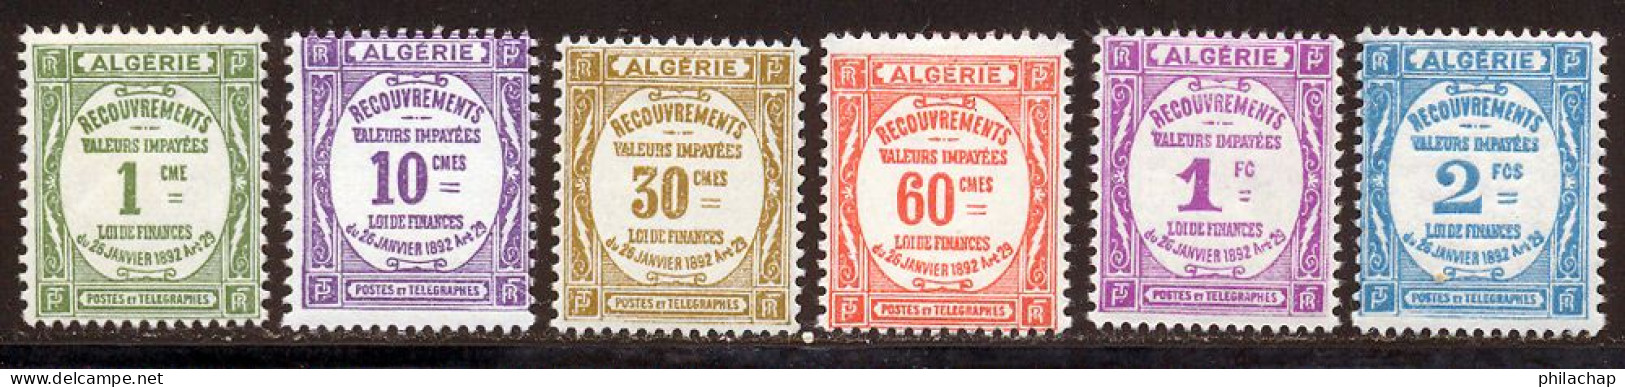 Algerie Taxe 1926 Yvert 15 / 20 * TB Charniere(s) - Strafport